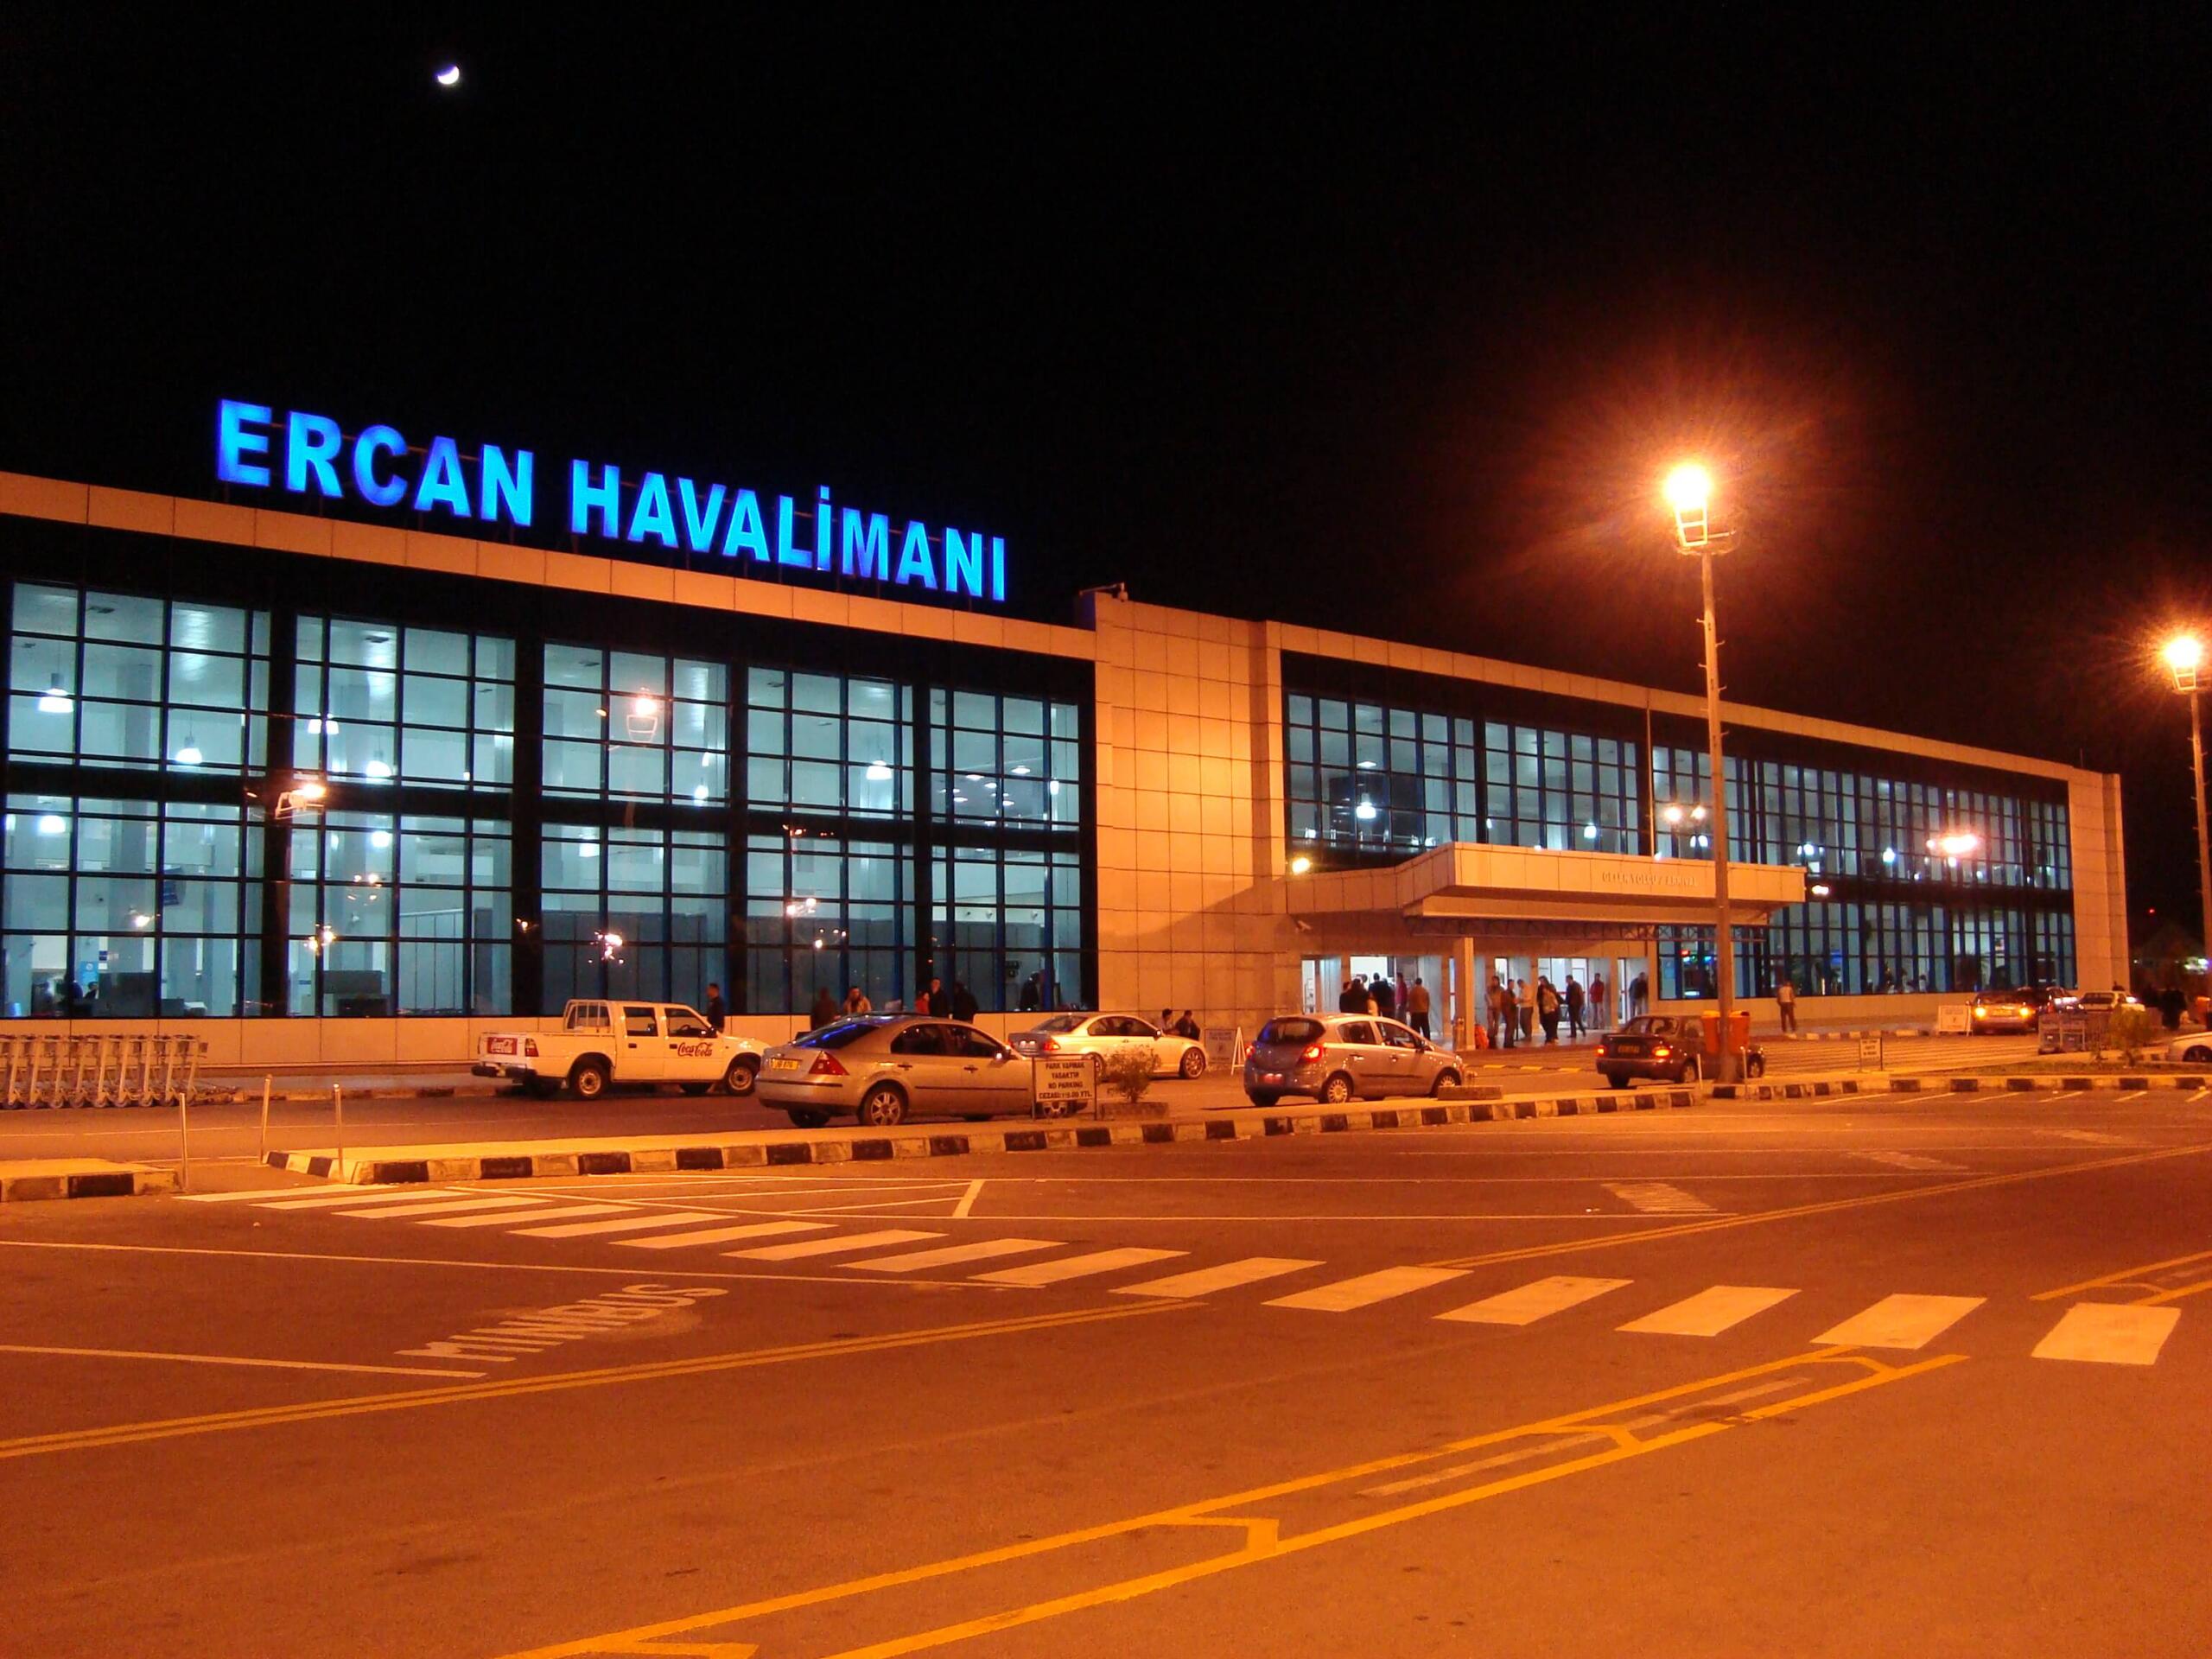 Ercan Havaalanı, 4 gün süreyle yabancı yolculara kapalı olacak